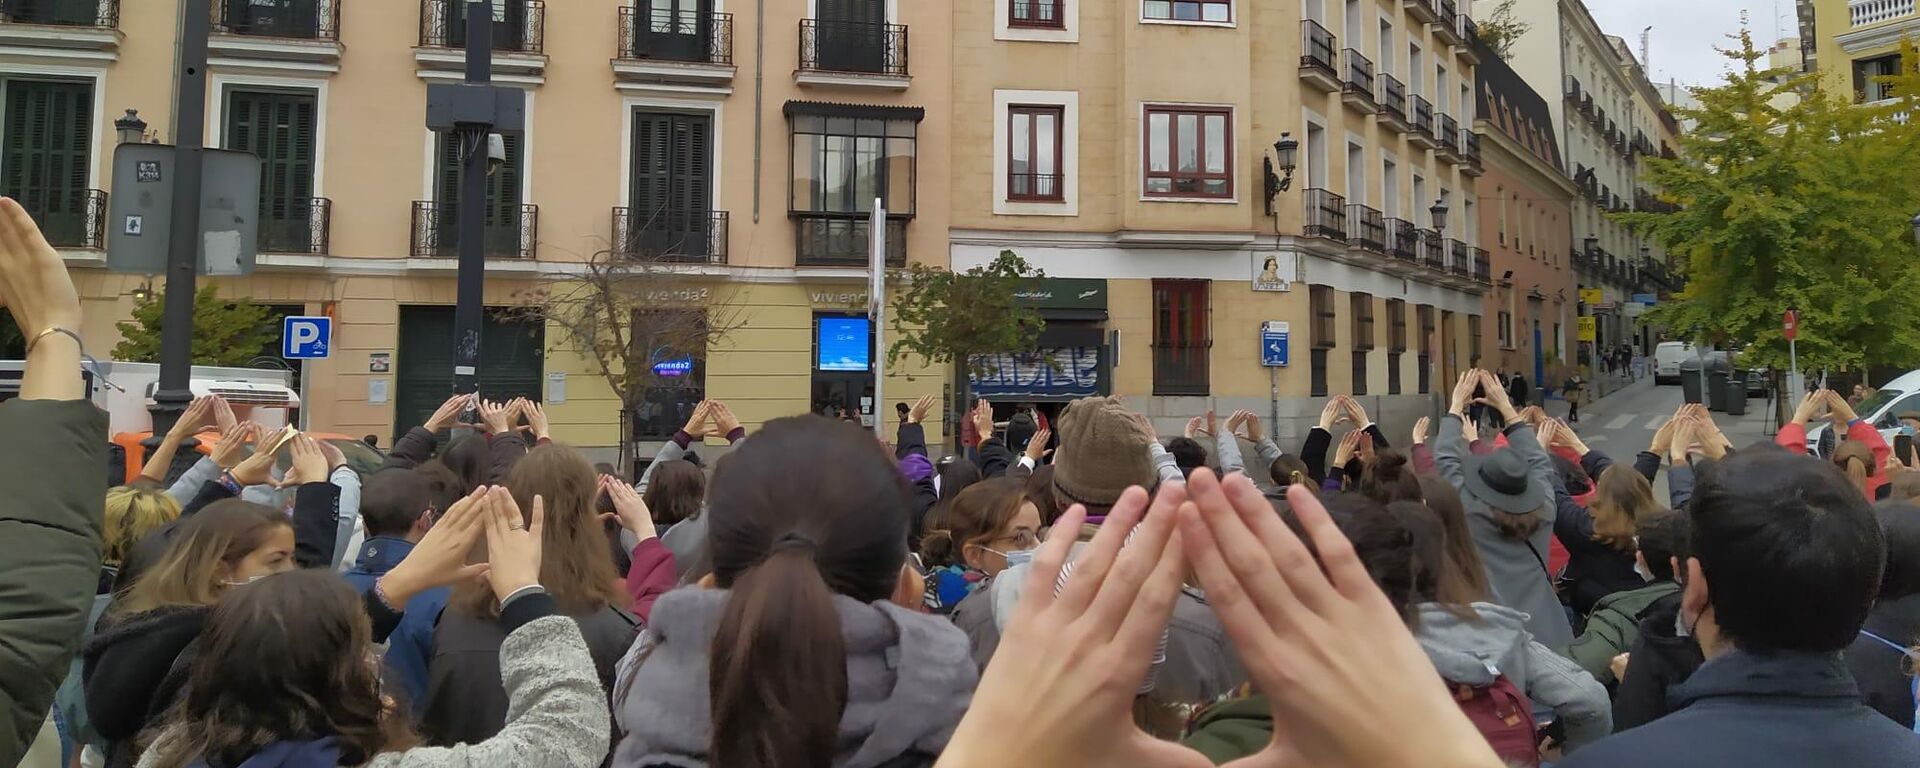 Protesta en Madrid contra las violaciones mediante la sumisión química - Sputnik Mundo, 1920, 25.11.2021